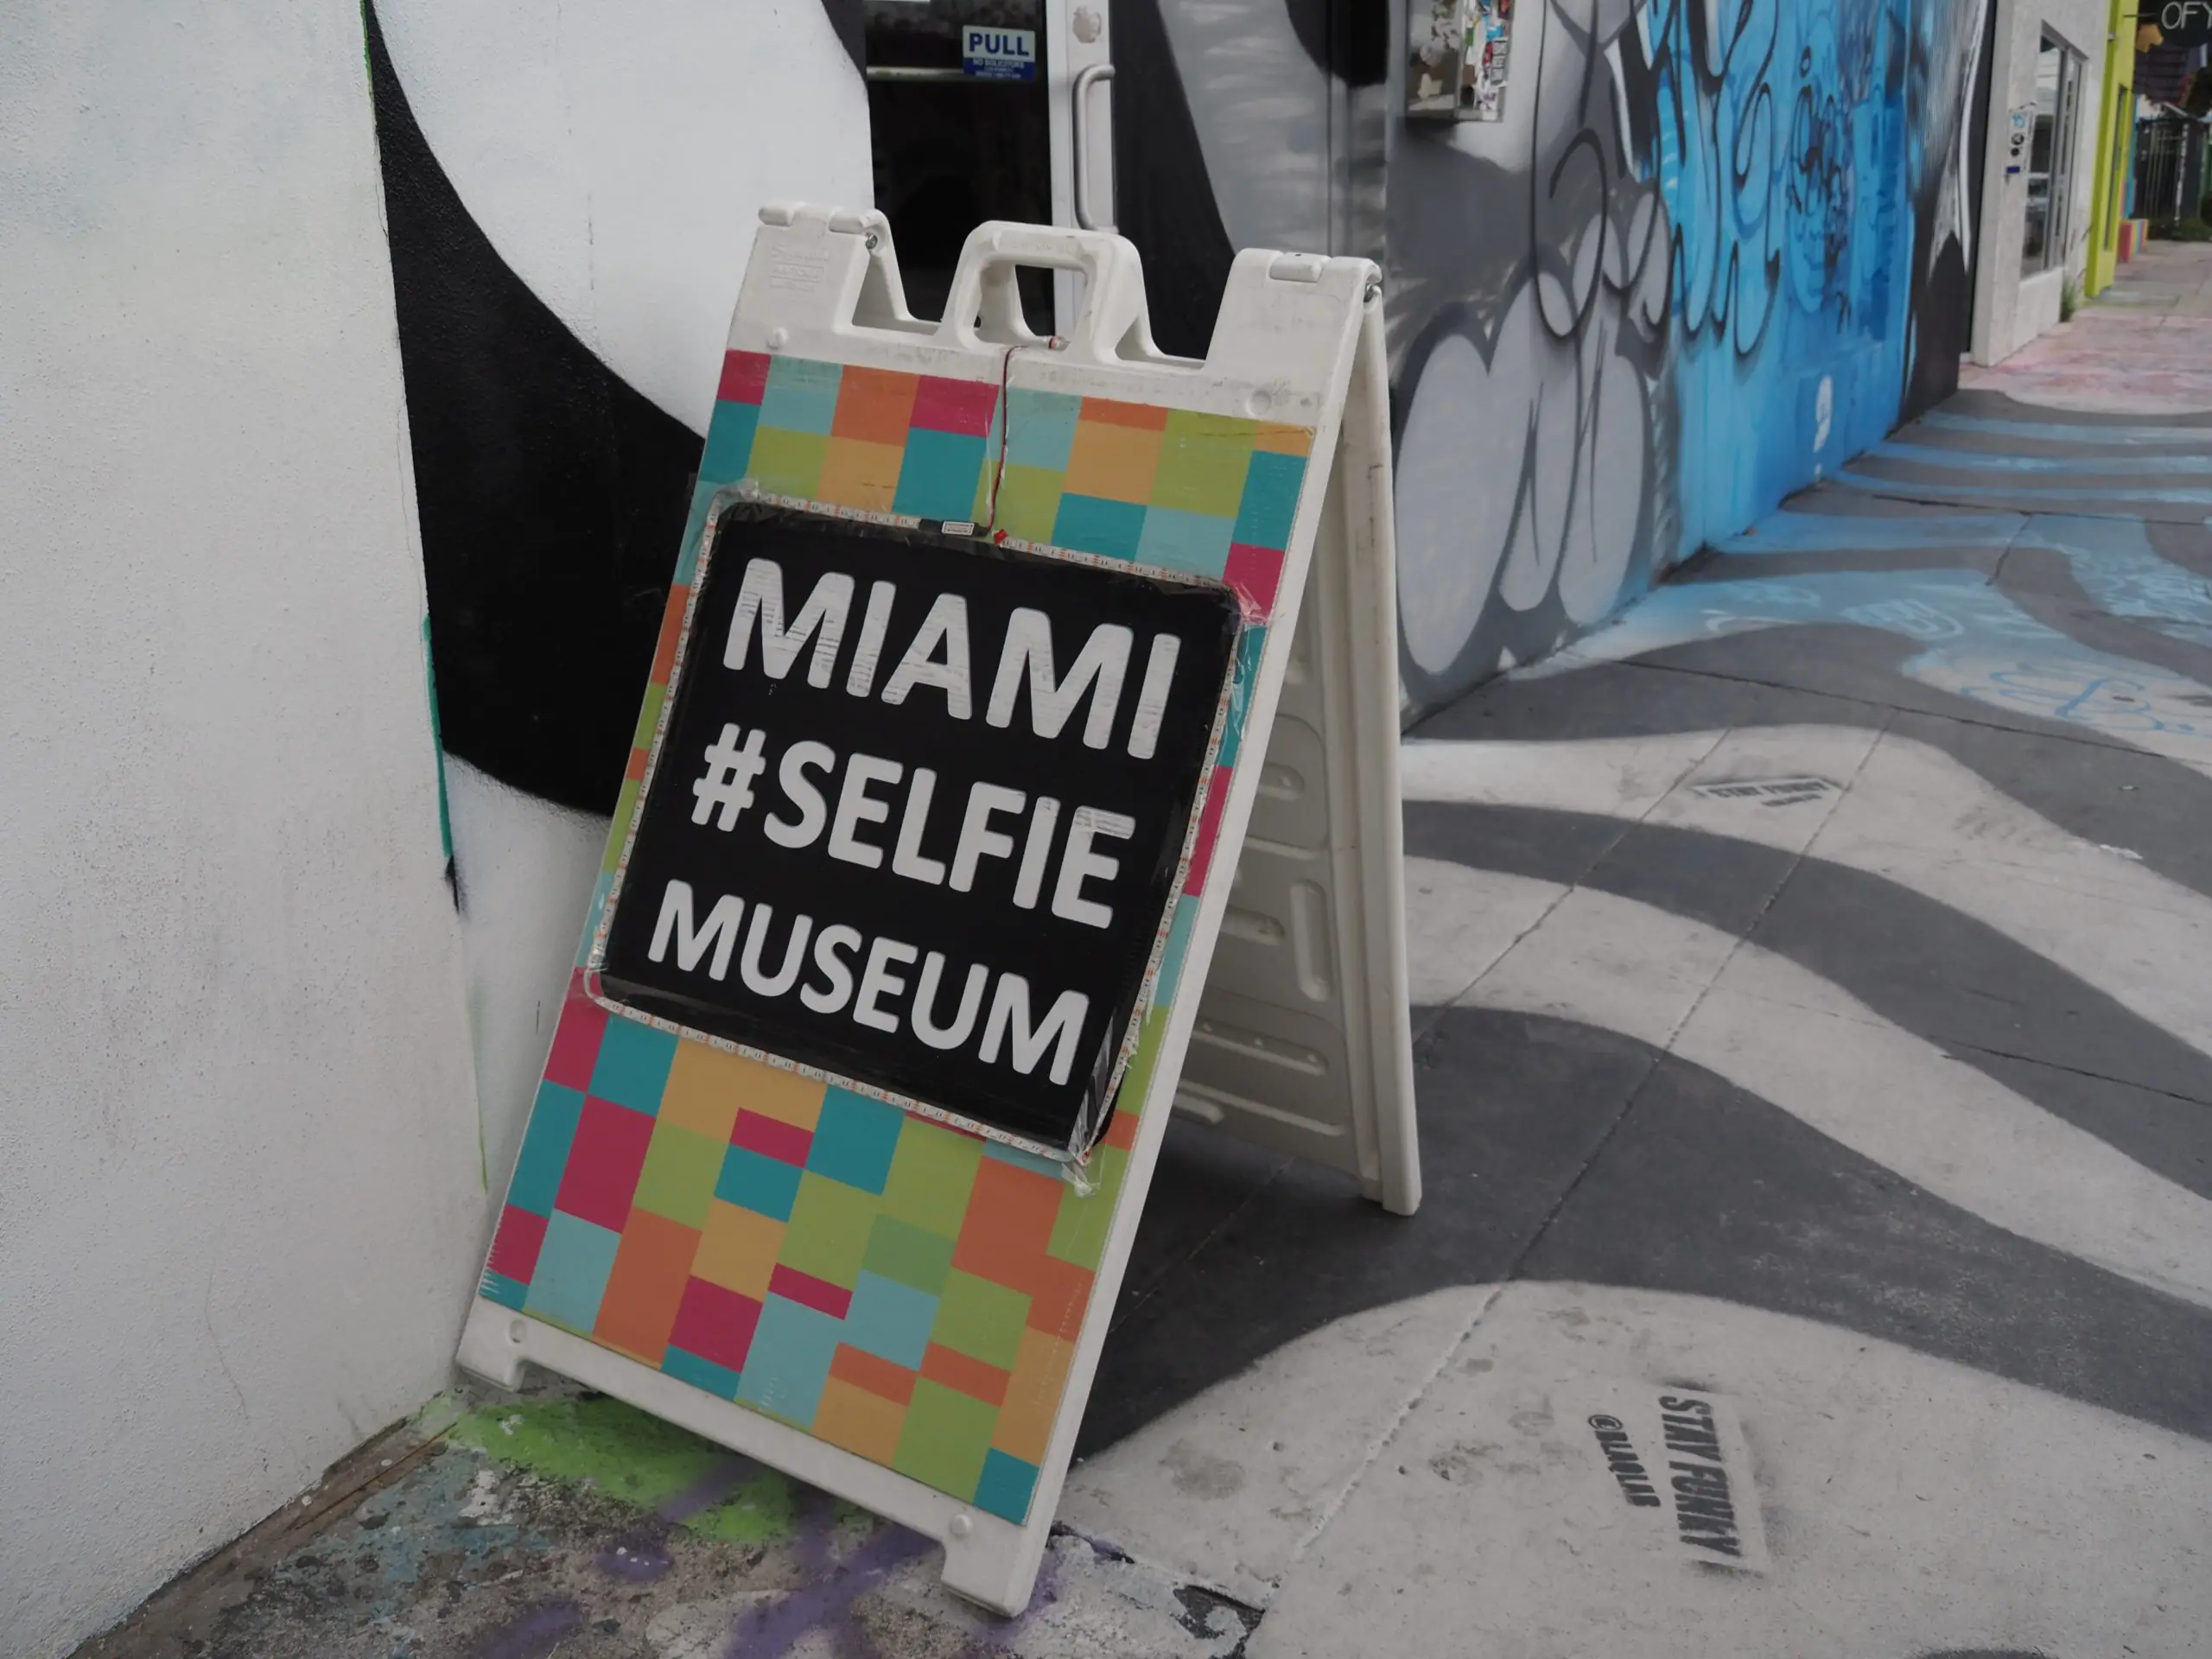 Miami Selfie Museum sign